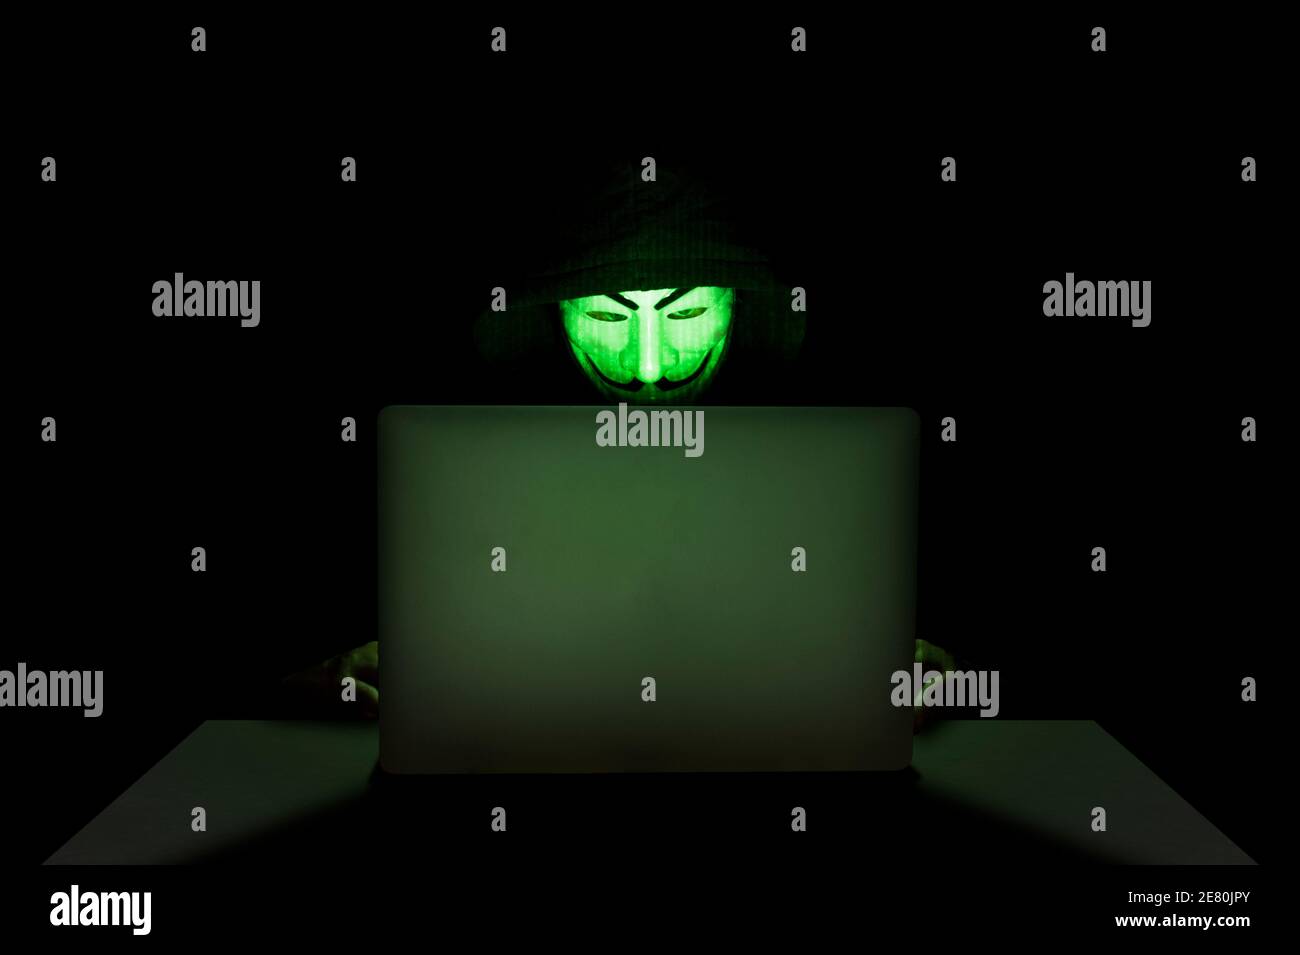 Mitglied der anonymen Hacker-Gruppe, die eine Maske vor seinem Laptop trägt, während sie einen Hack begeht. Stockfoto